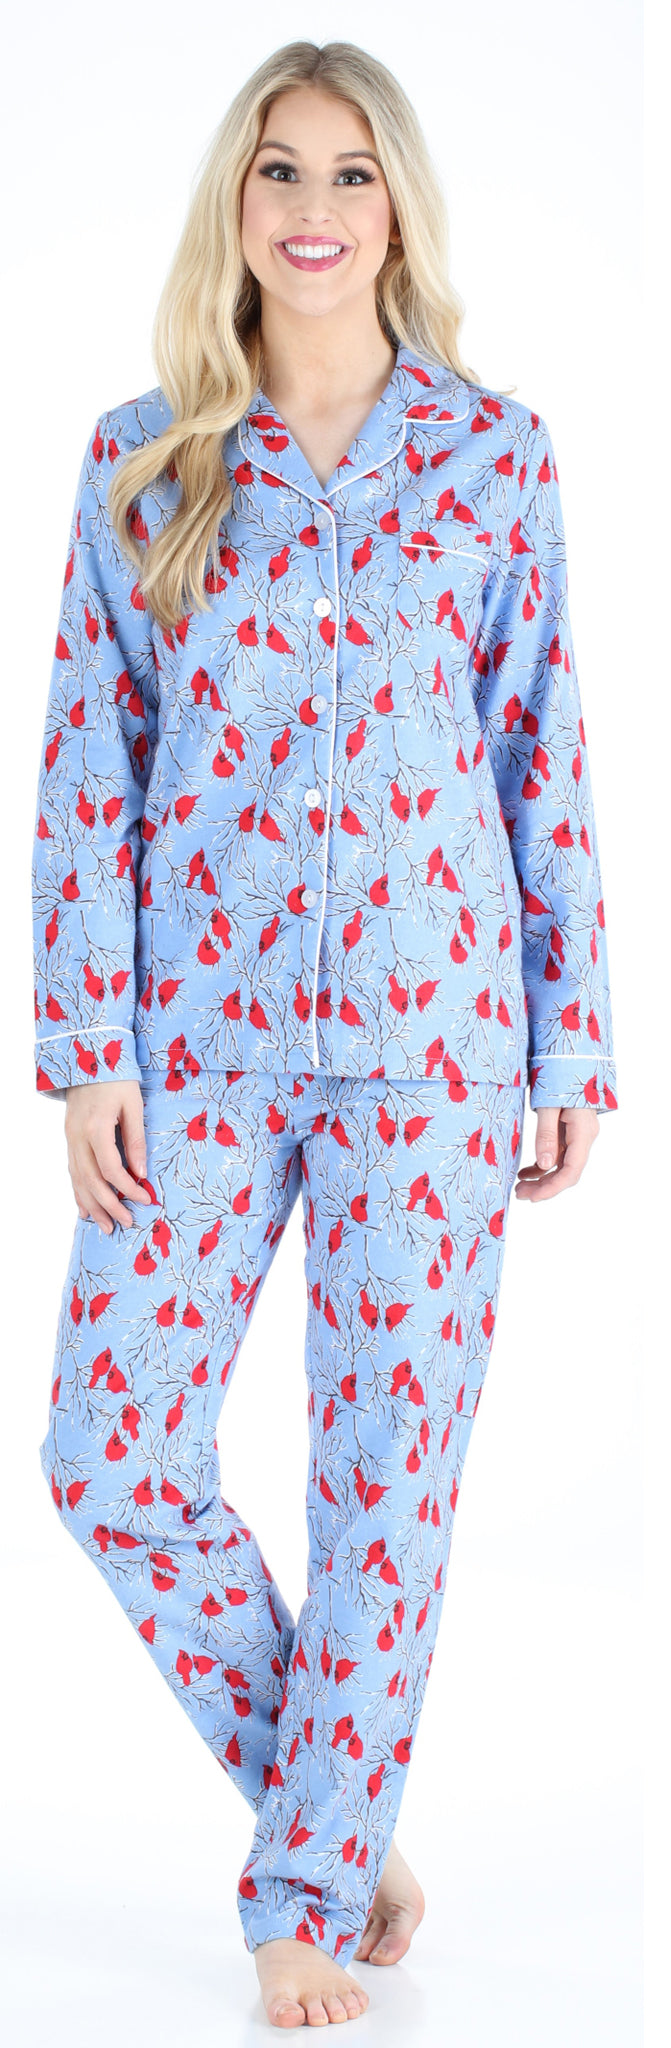 PajamaMania Women’s Cotton Flannel Long Sleeve Pajamas PJ Set